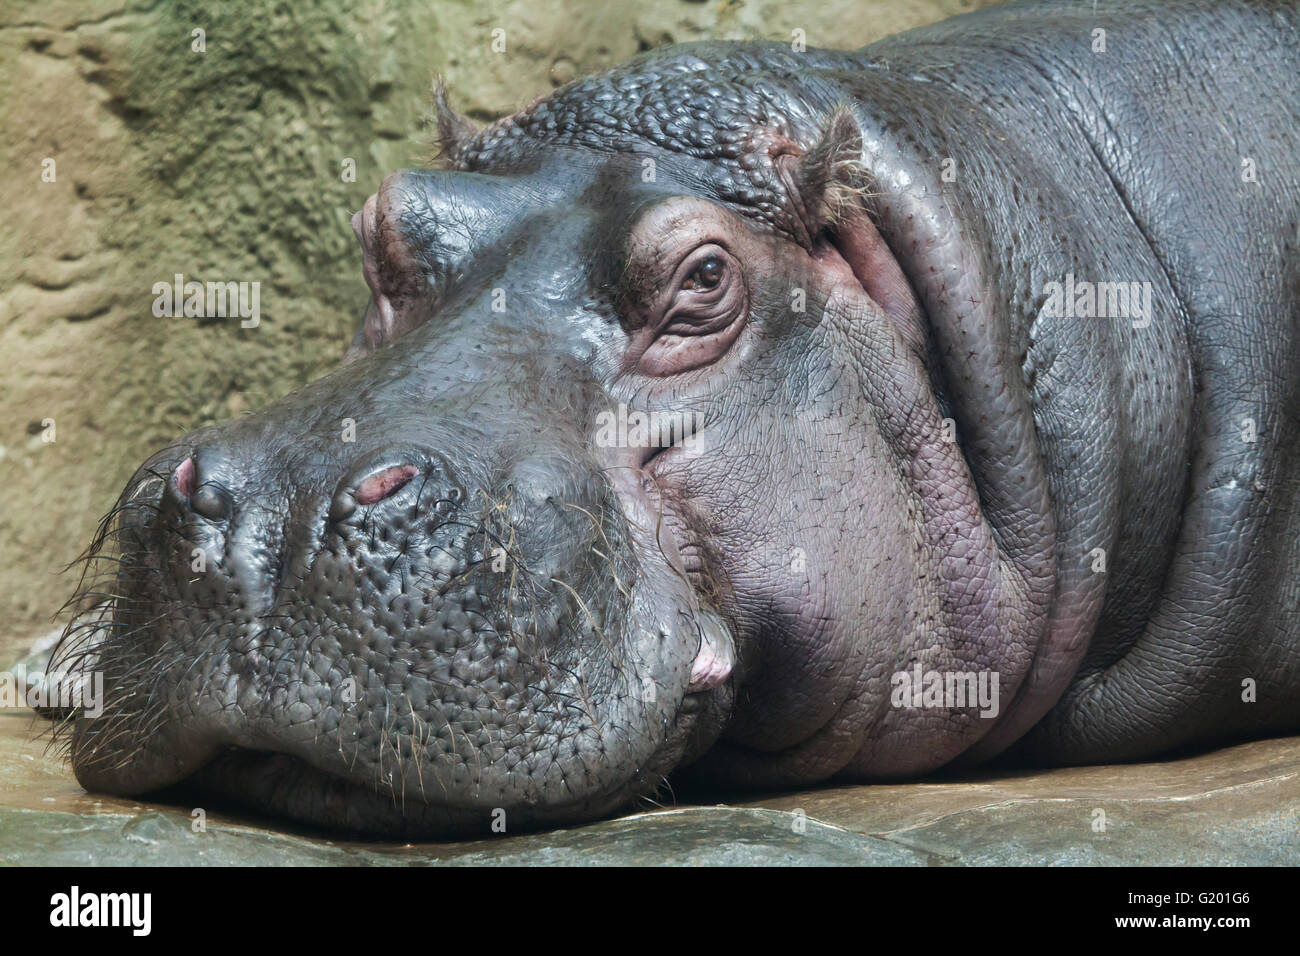 Hipopótamo (Hippopotamus amphibius) en el parque zoológico de Praga, República Checa. Foto de stock